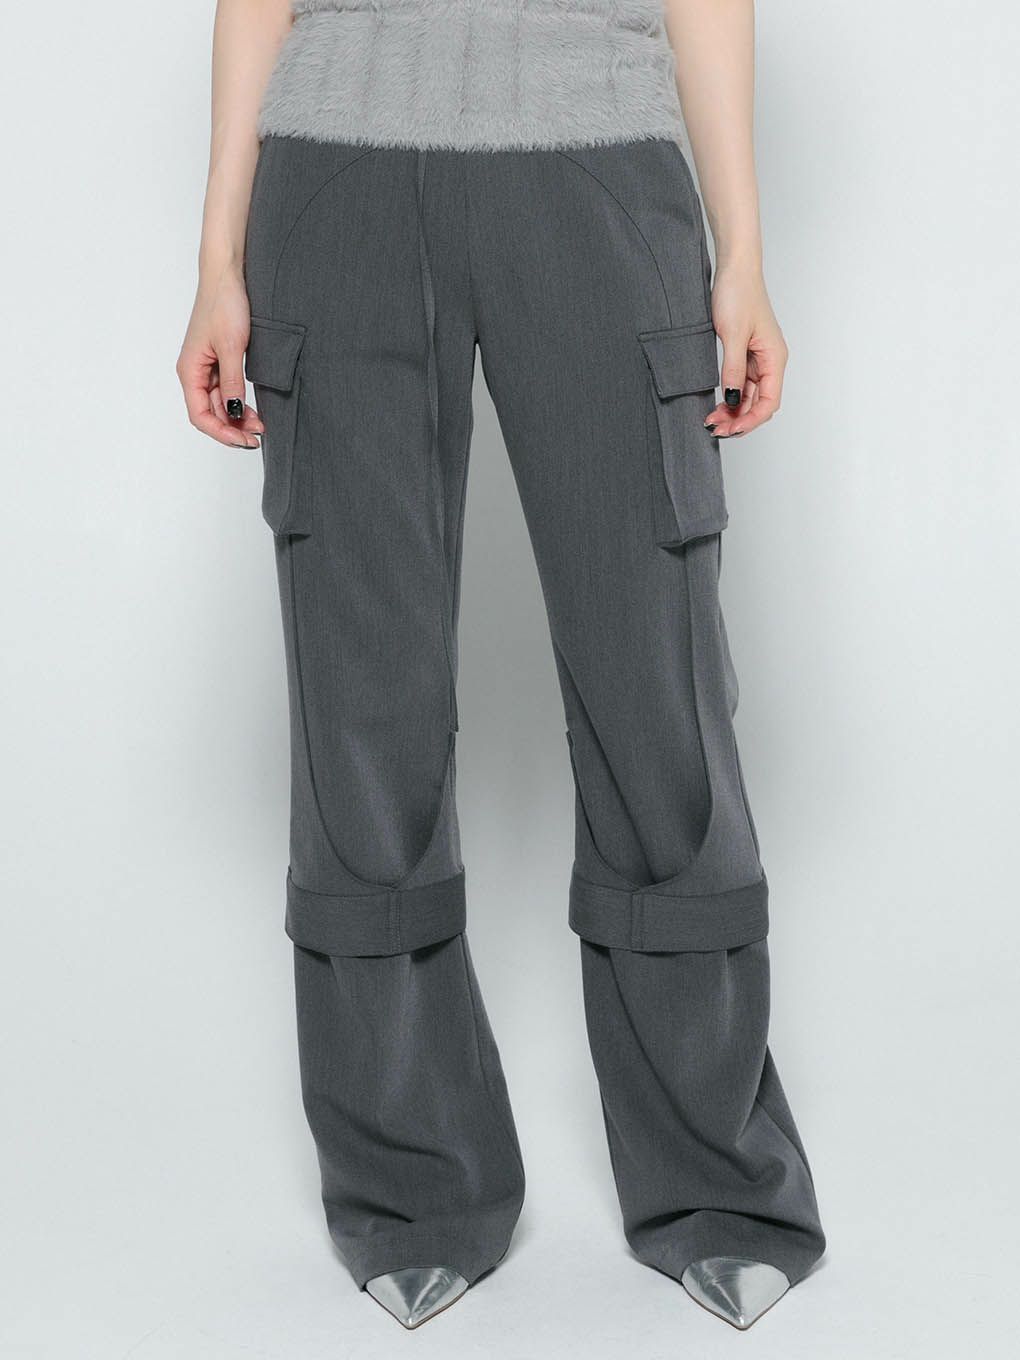 cutout tight flare pants | MELT THE LADY | メルトザレディ公式サイト